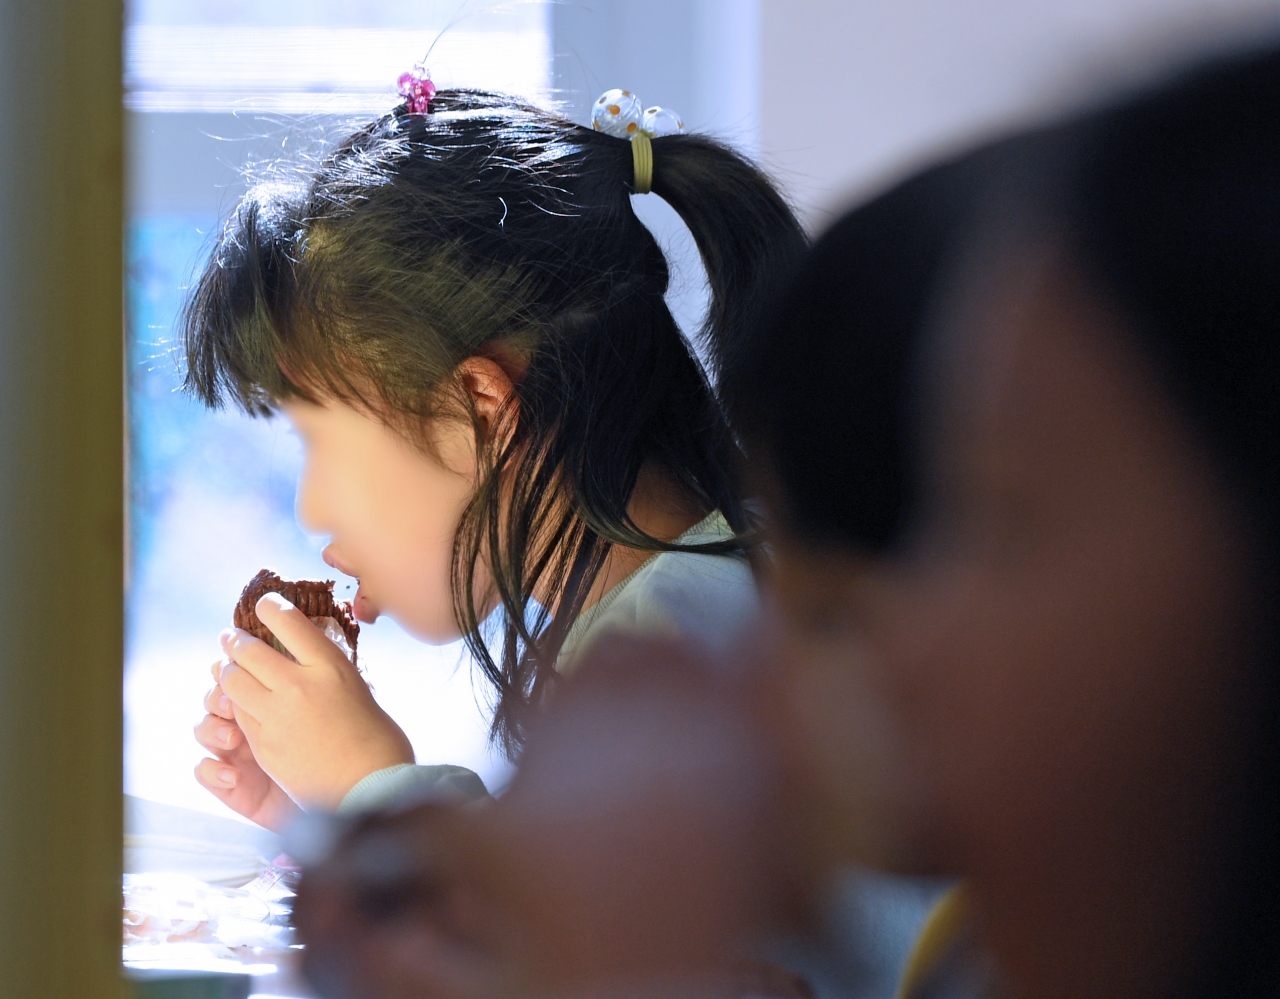 전국학교비정규직연대회가 총파업에 들어간 2일 충북 청주시의 한 초등학교에서 아이들이 빵과 우유로 구성된 대체 급식을 먹고 있다. /김명년